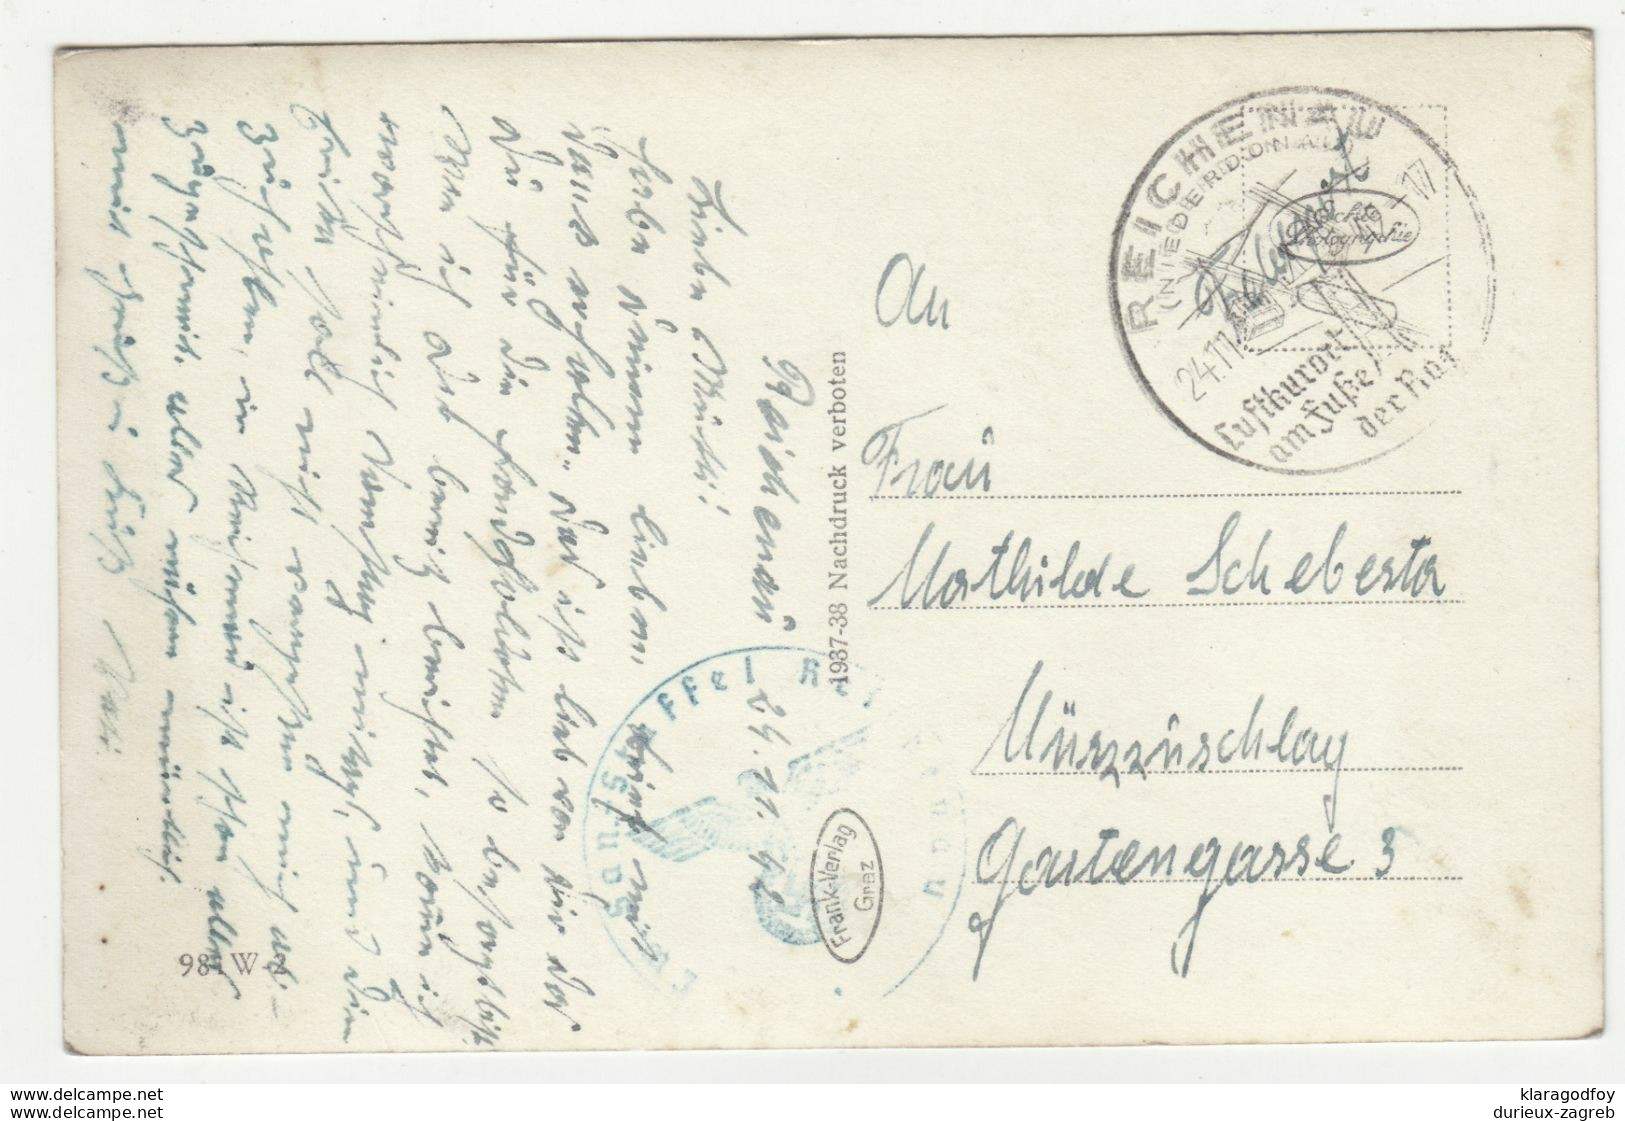 Küb Am Semmering Postcard Posted As Feldpost 1942 Reichenau Special Pmk B200901 - Semmering